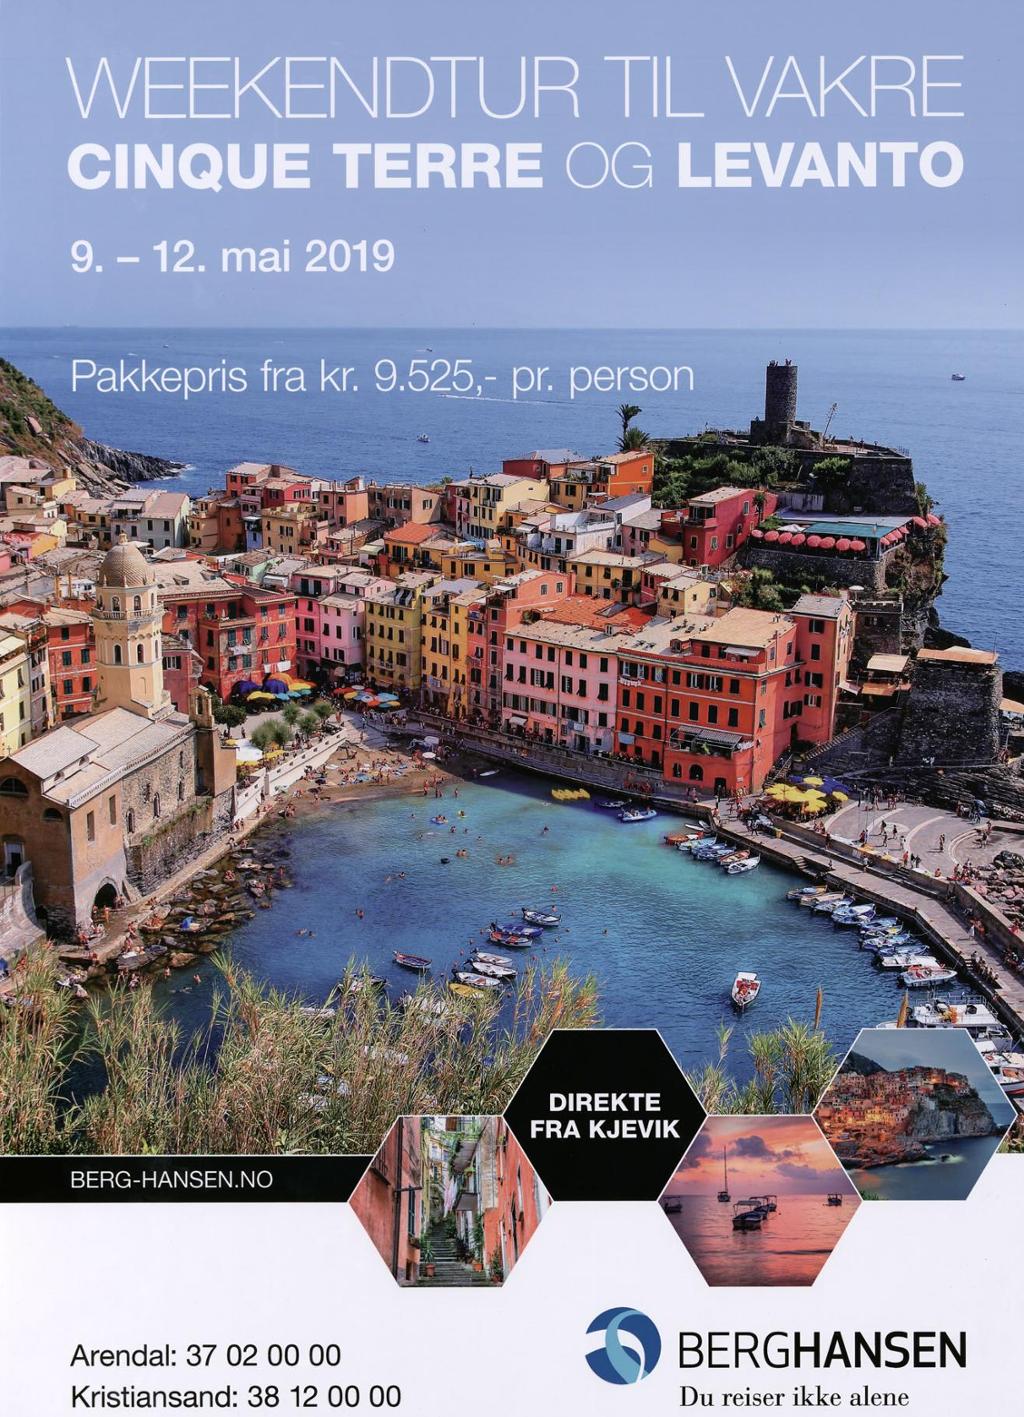 Reklameplakat for reisebyrået Berg-Hansen, som tilbyr pakkepris på weekendtur til Cinque Terre og Levanto, direkte frå Kjevik.